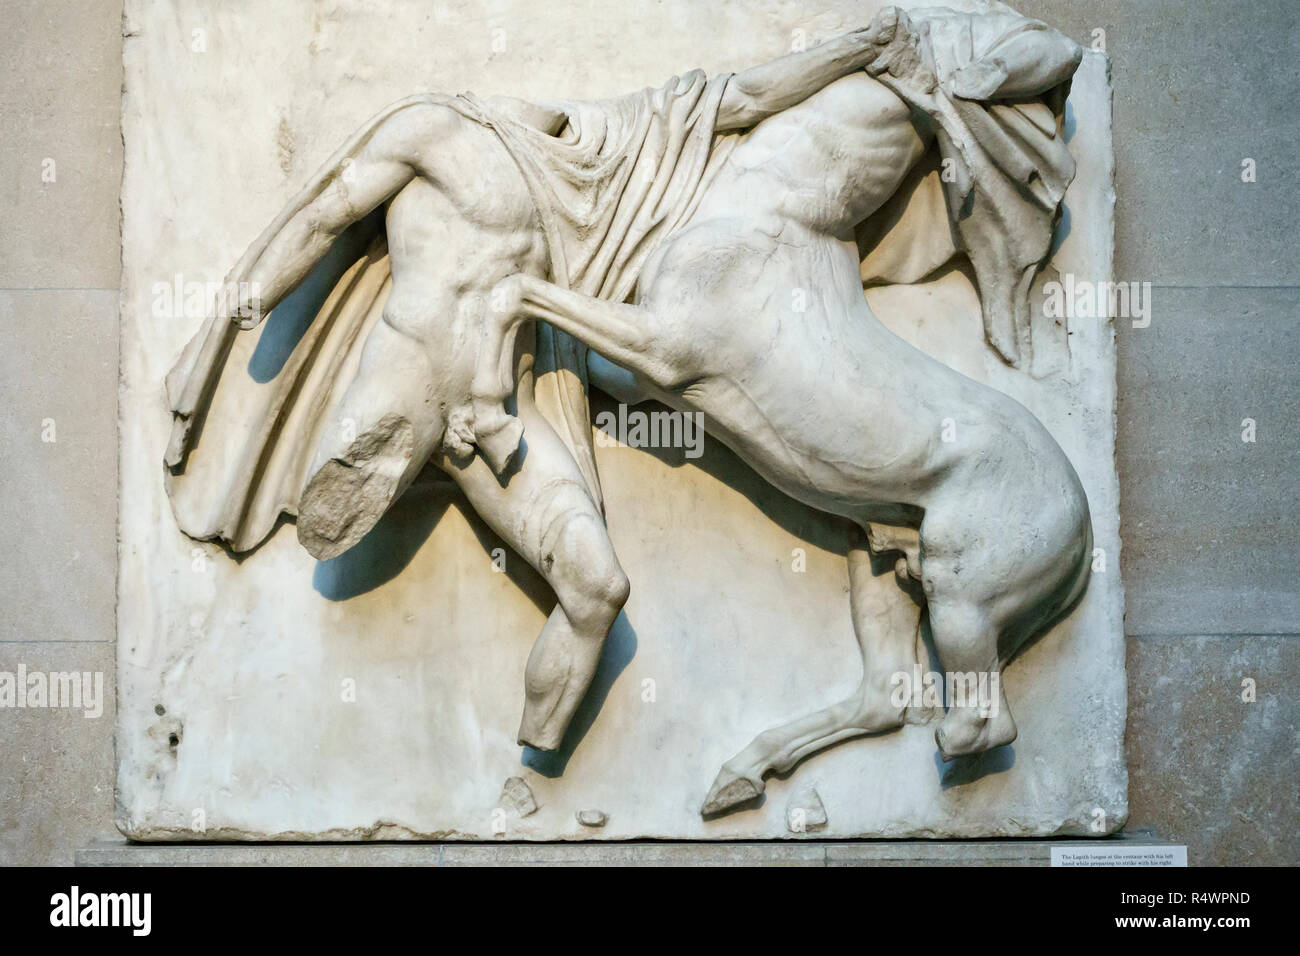 Teil der Elgin Marbles im British Museum, London, UK. Metope Süd VII. Lapith und Centaur kämpfen Stockfoto